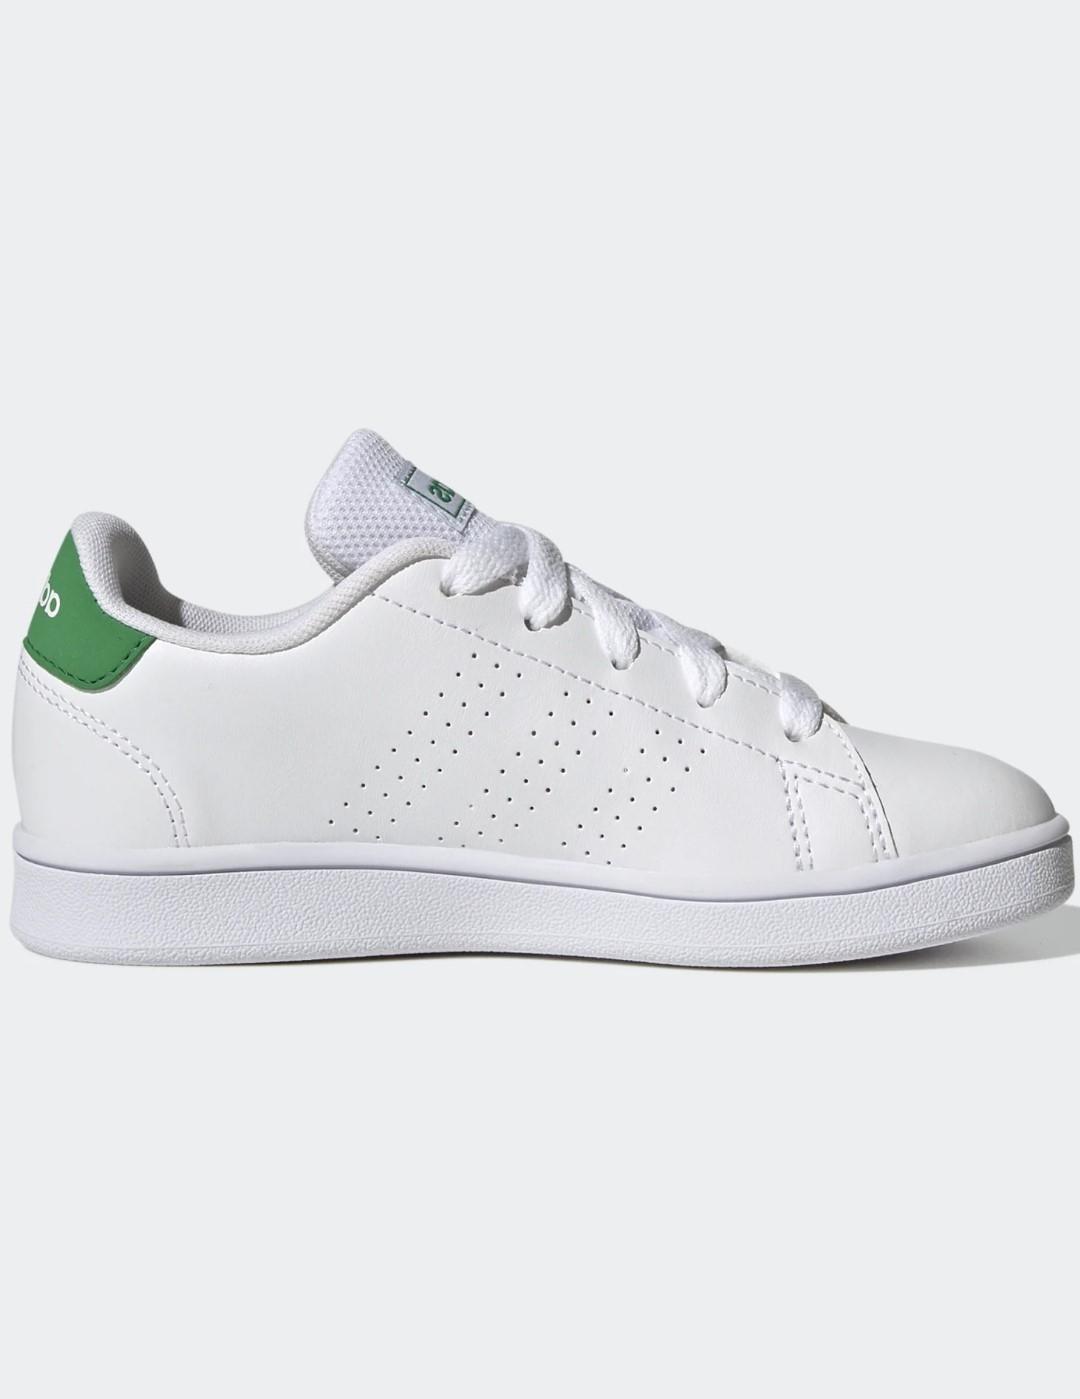 Zapatilla Adidas ADVANTAGE K blanco/verde Junior